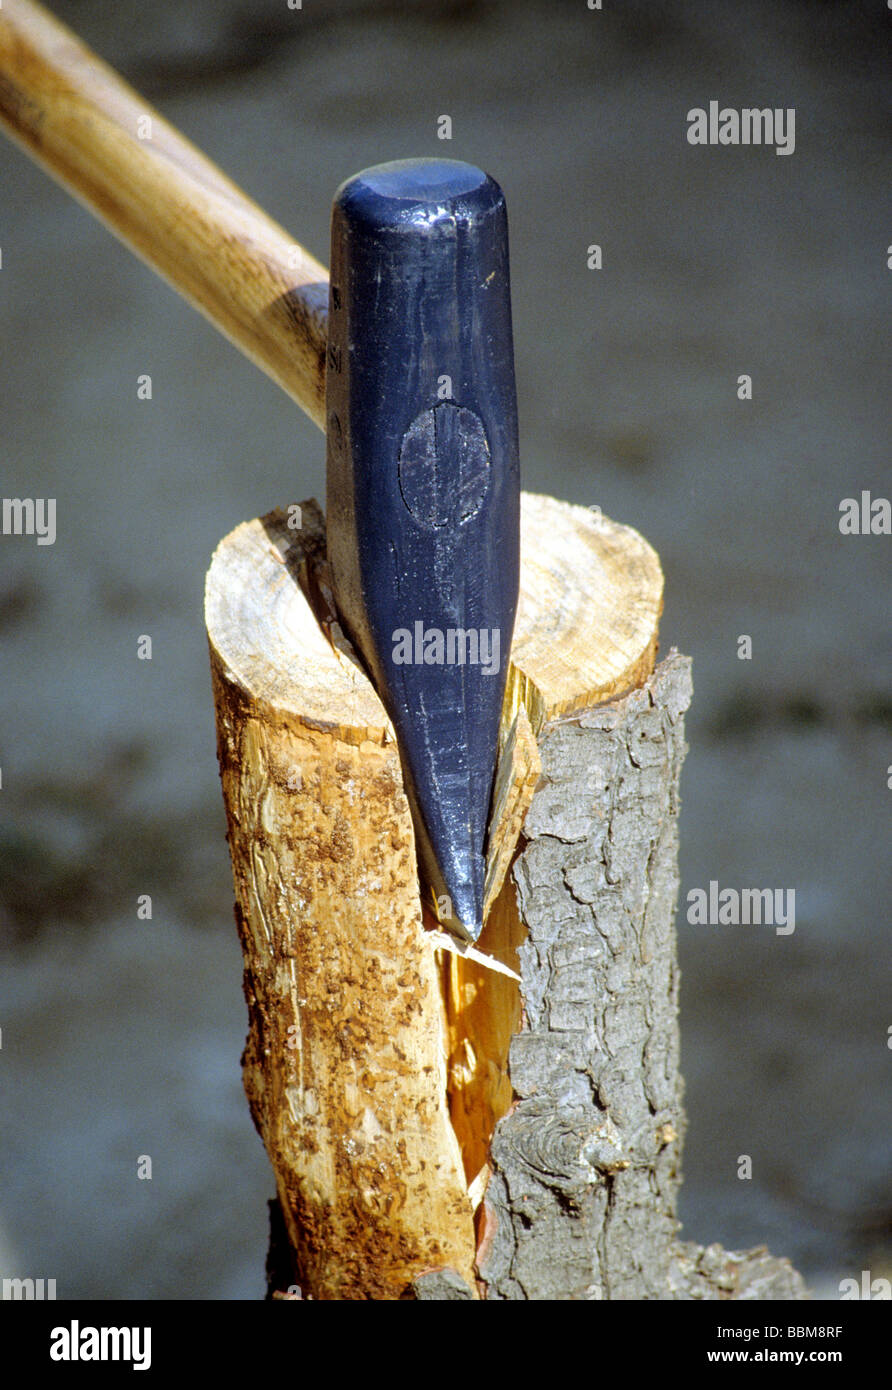 Axt Keil Dechsel Hammer Schlitten teilen Log Holz schneiden hacken Holz  Baum Maschine Stockfotografie - Alamy